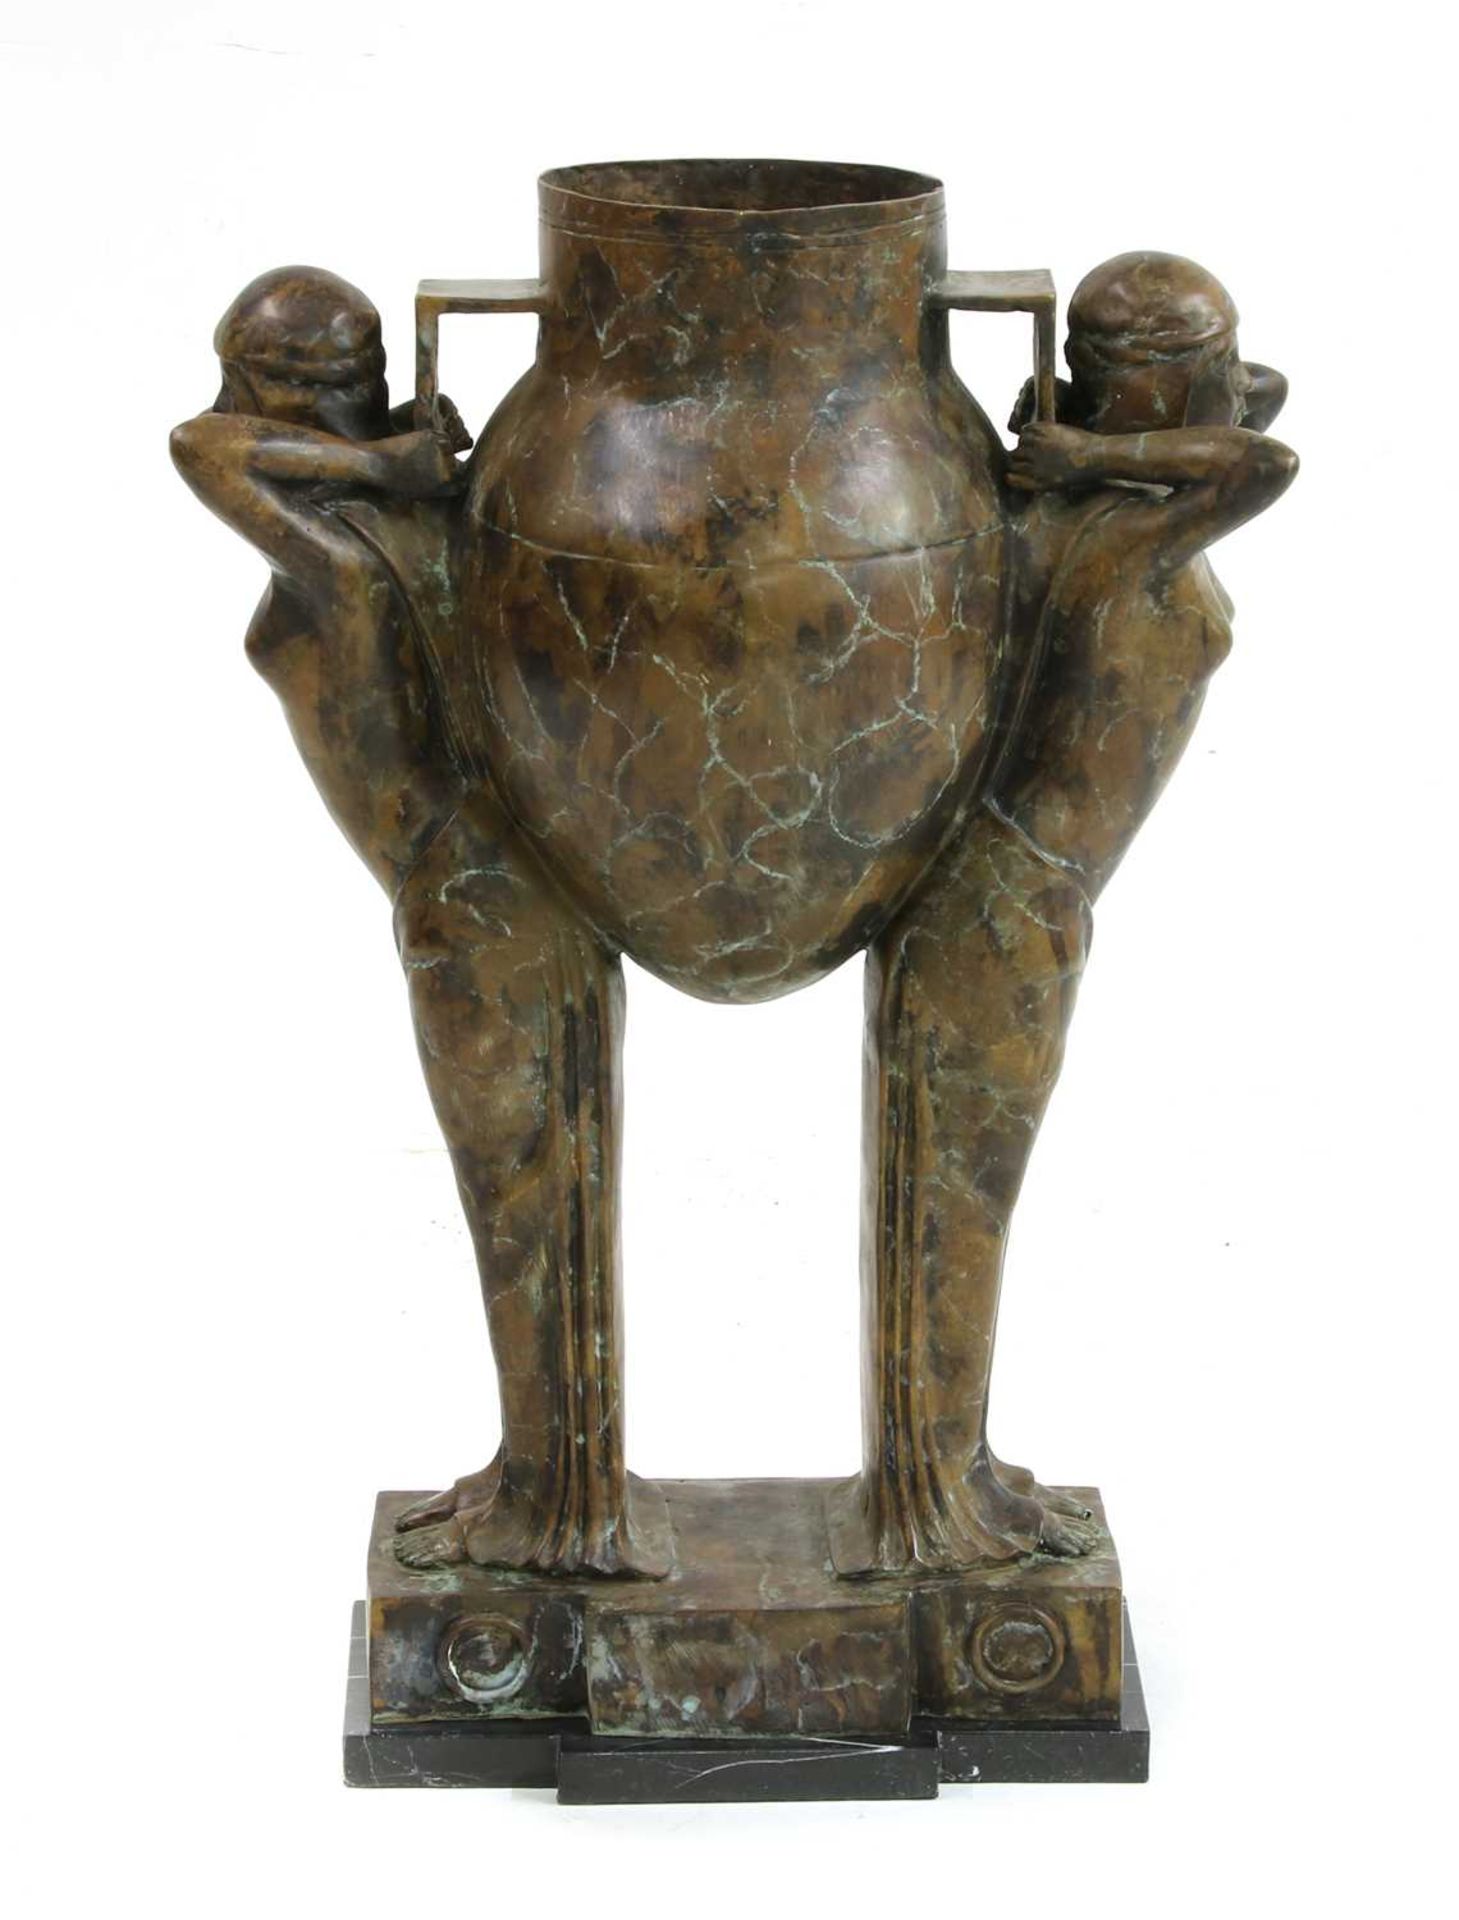 An Art Deco style bronze pitcher,